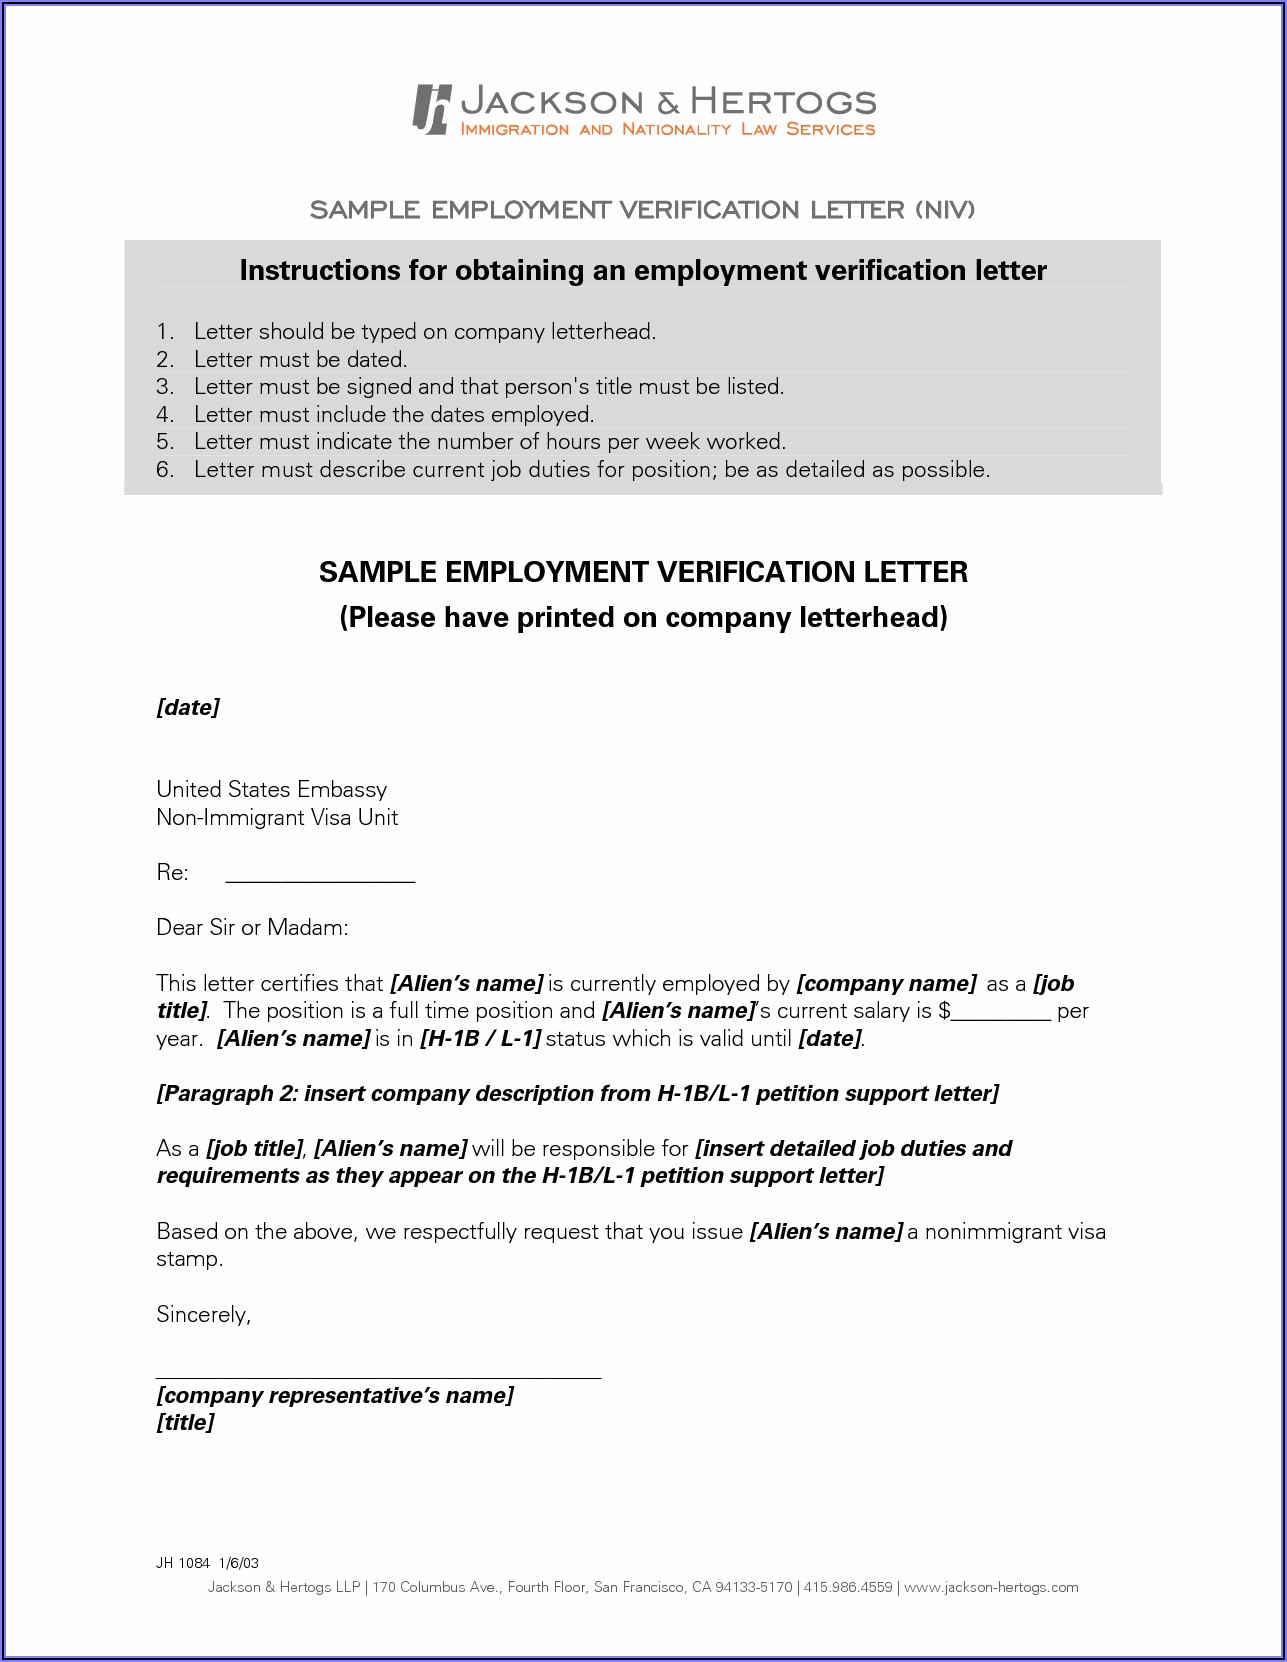 Sample Employment Verification Letter For Uk Visa